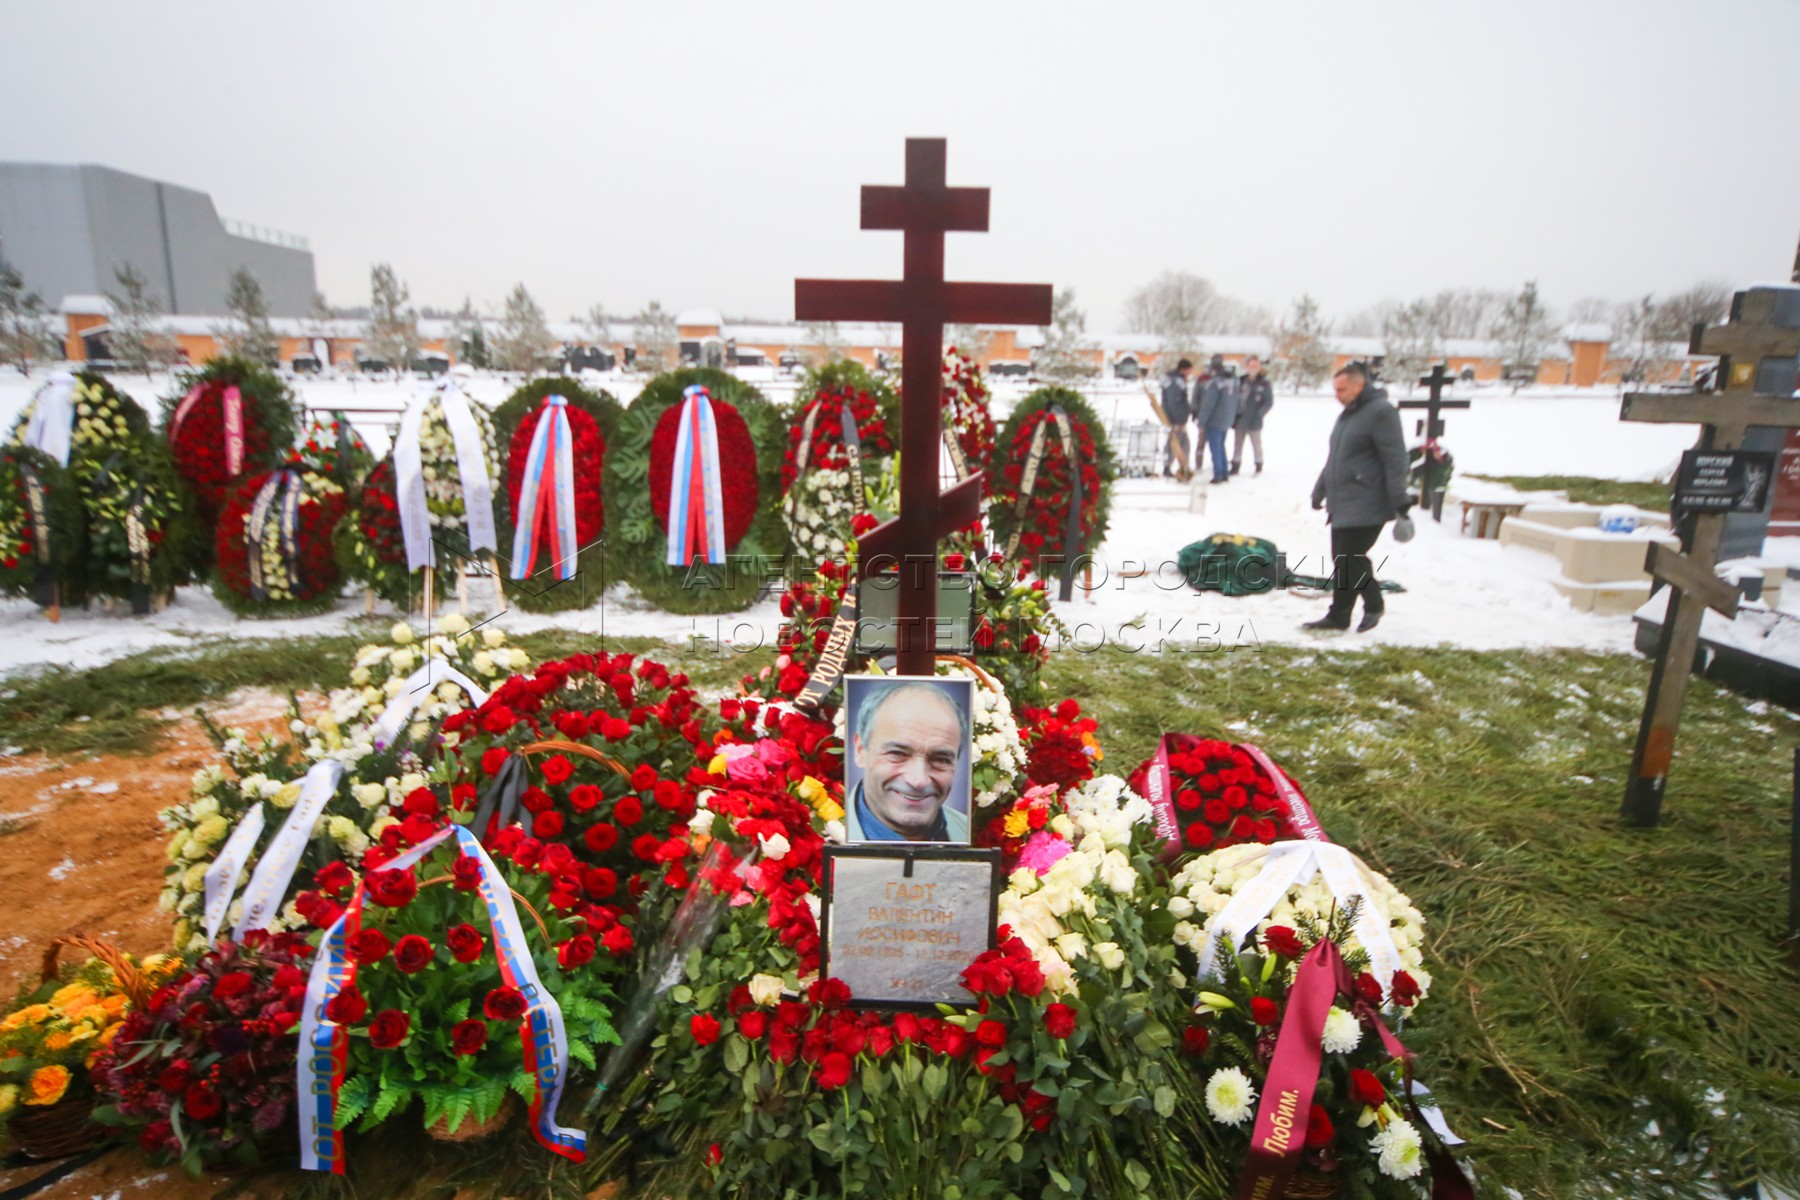 Могила мягкова на троекуровском кладбище фото сегодня сейчас